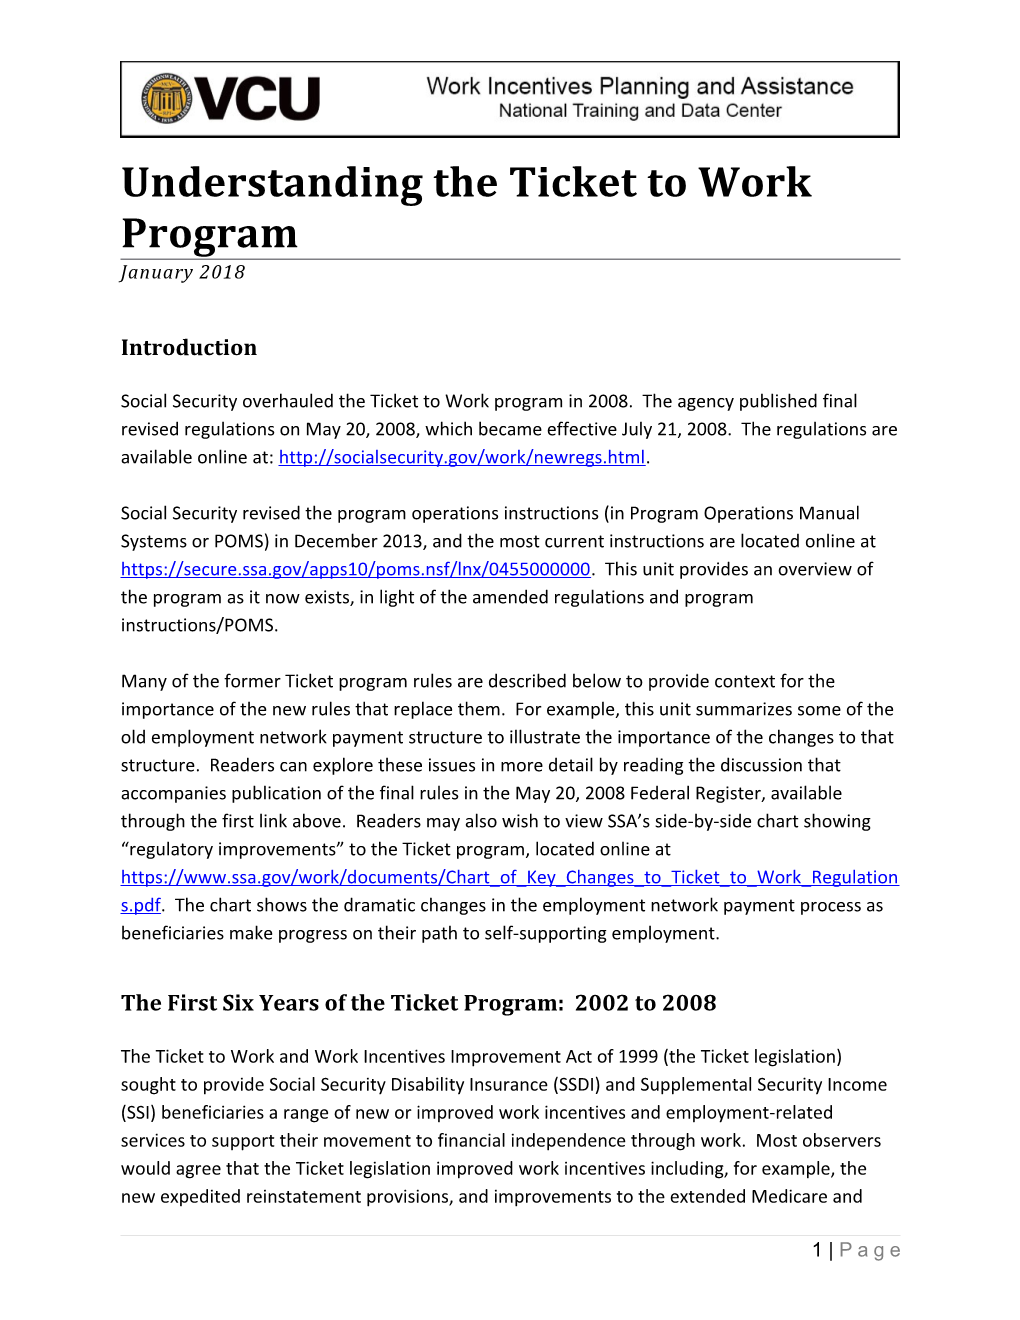 Understanding the Ticket to Work Program